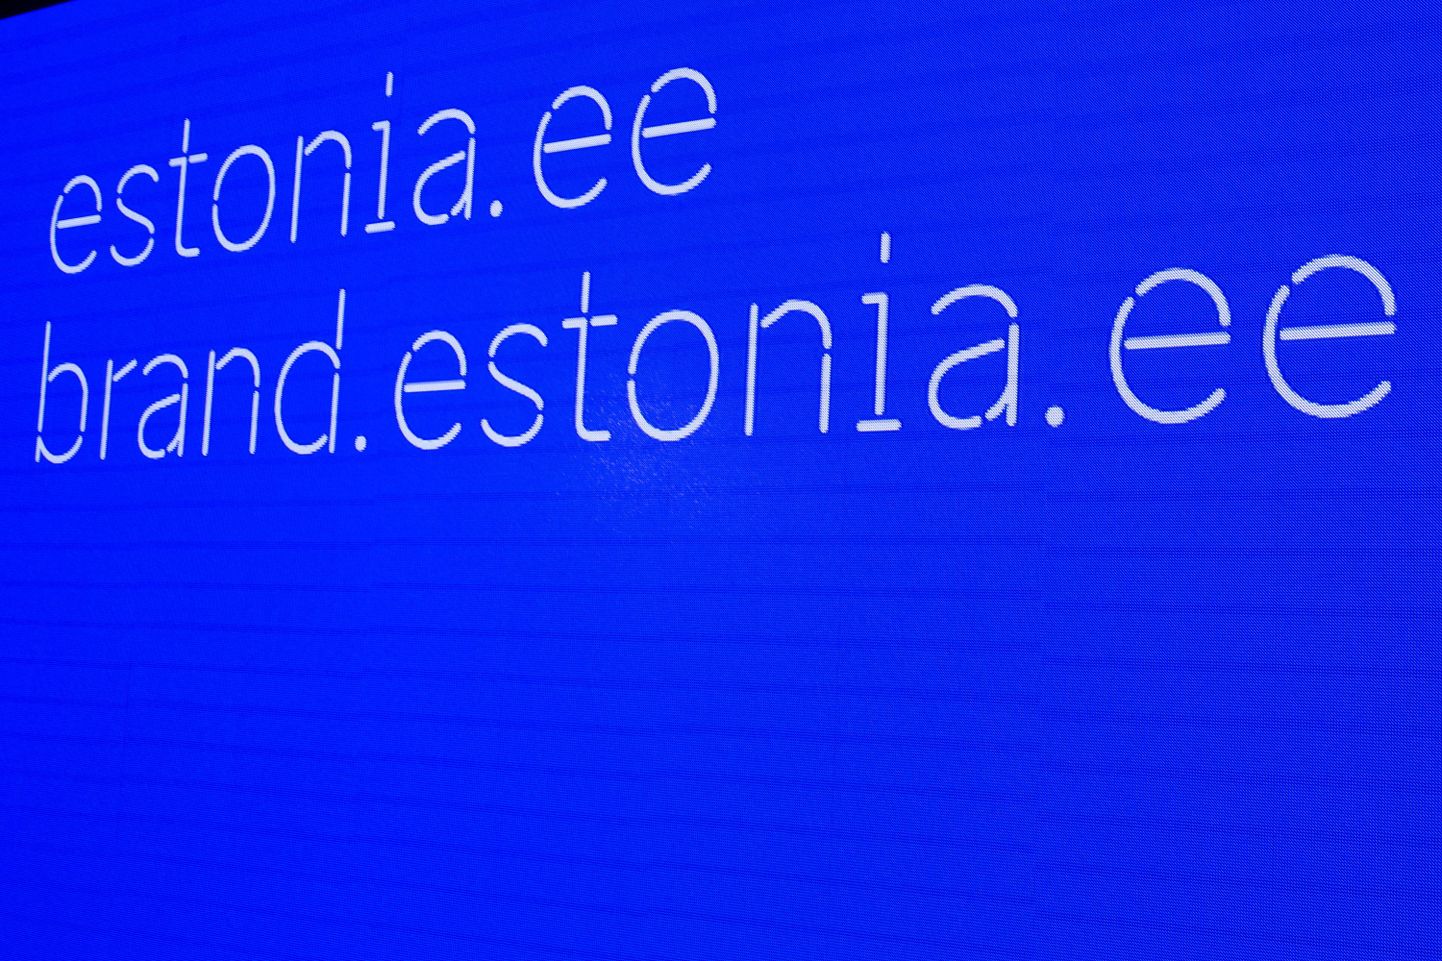 Ettevõtluse Arendamise Sihtasutuse (EAS) all tegutsev disainimeeskond avalikustas täna pooleaastase töö tulemusena valminud Eesti brändi kontseptsiooni, mille läbivateks elementideks on ühtne kirjatüüp, rohkelt Eestit ja eestlasi kirjeldavad sõnumeid ja ikoone ning läbiva joonena rändrahnude motiiv ja elektroonilisusele viitav täht «e».